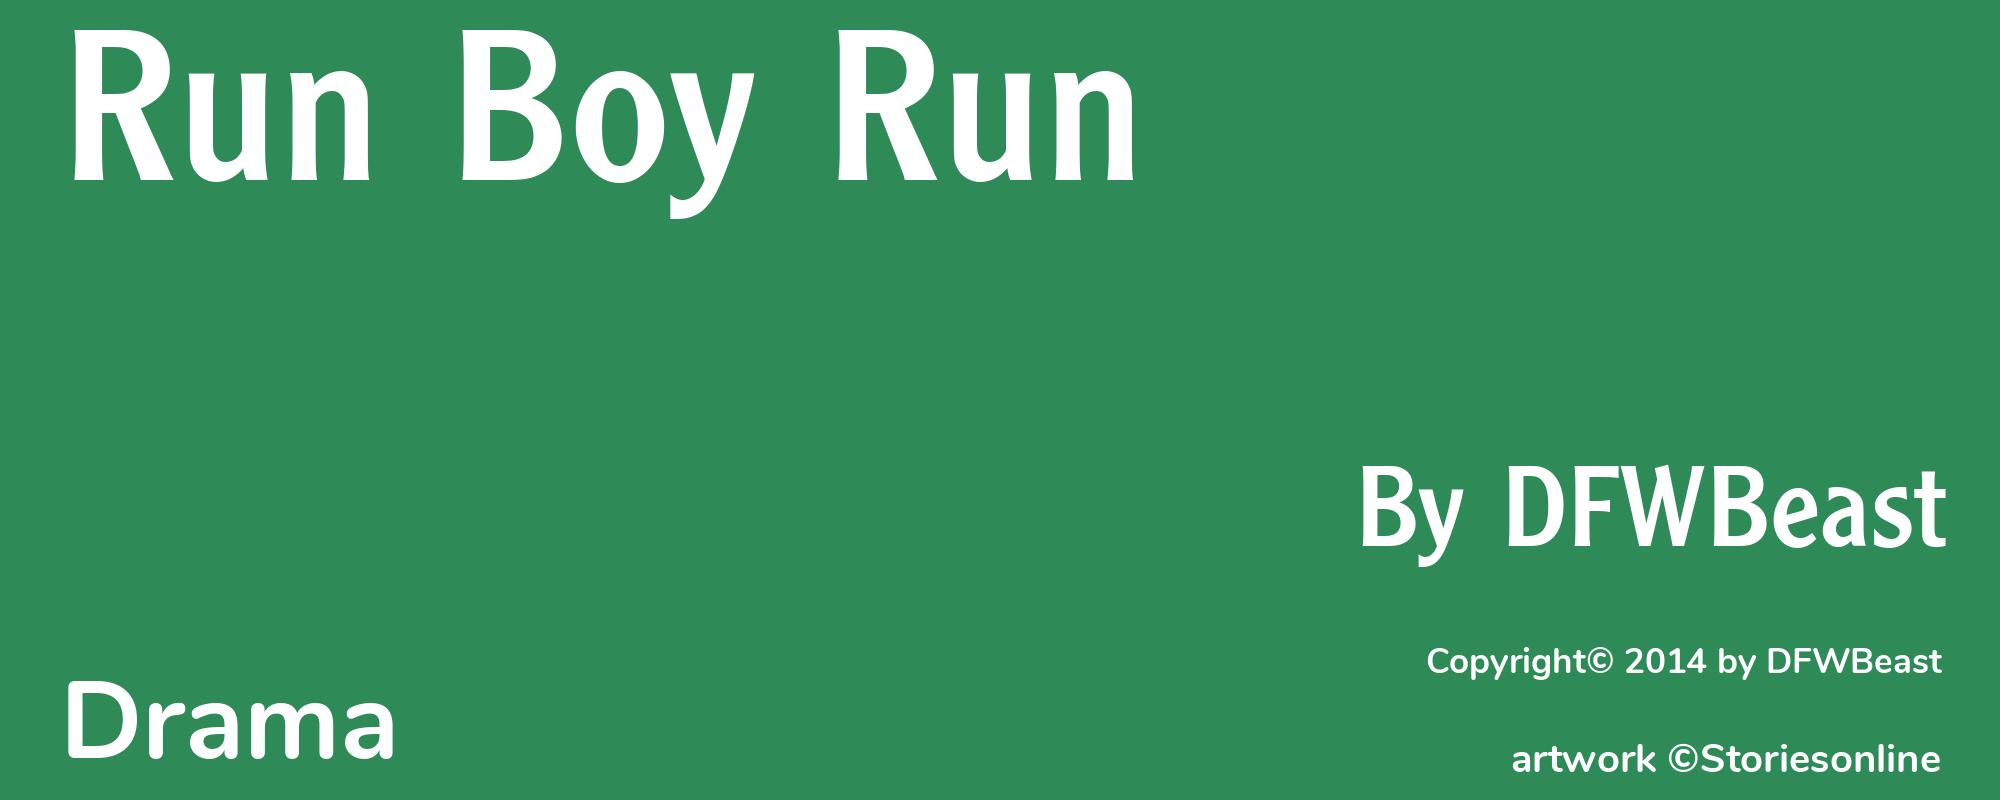 Run Boy Run - Cover